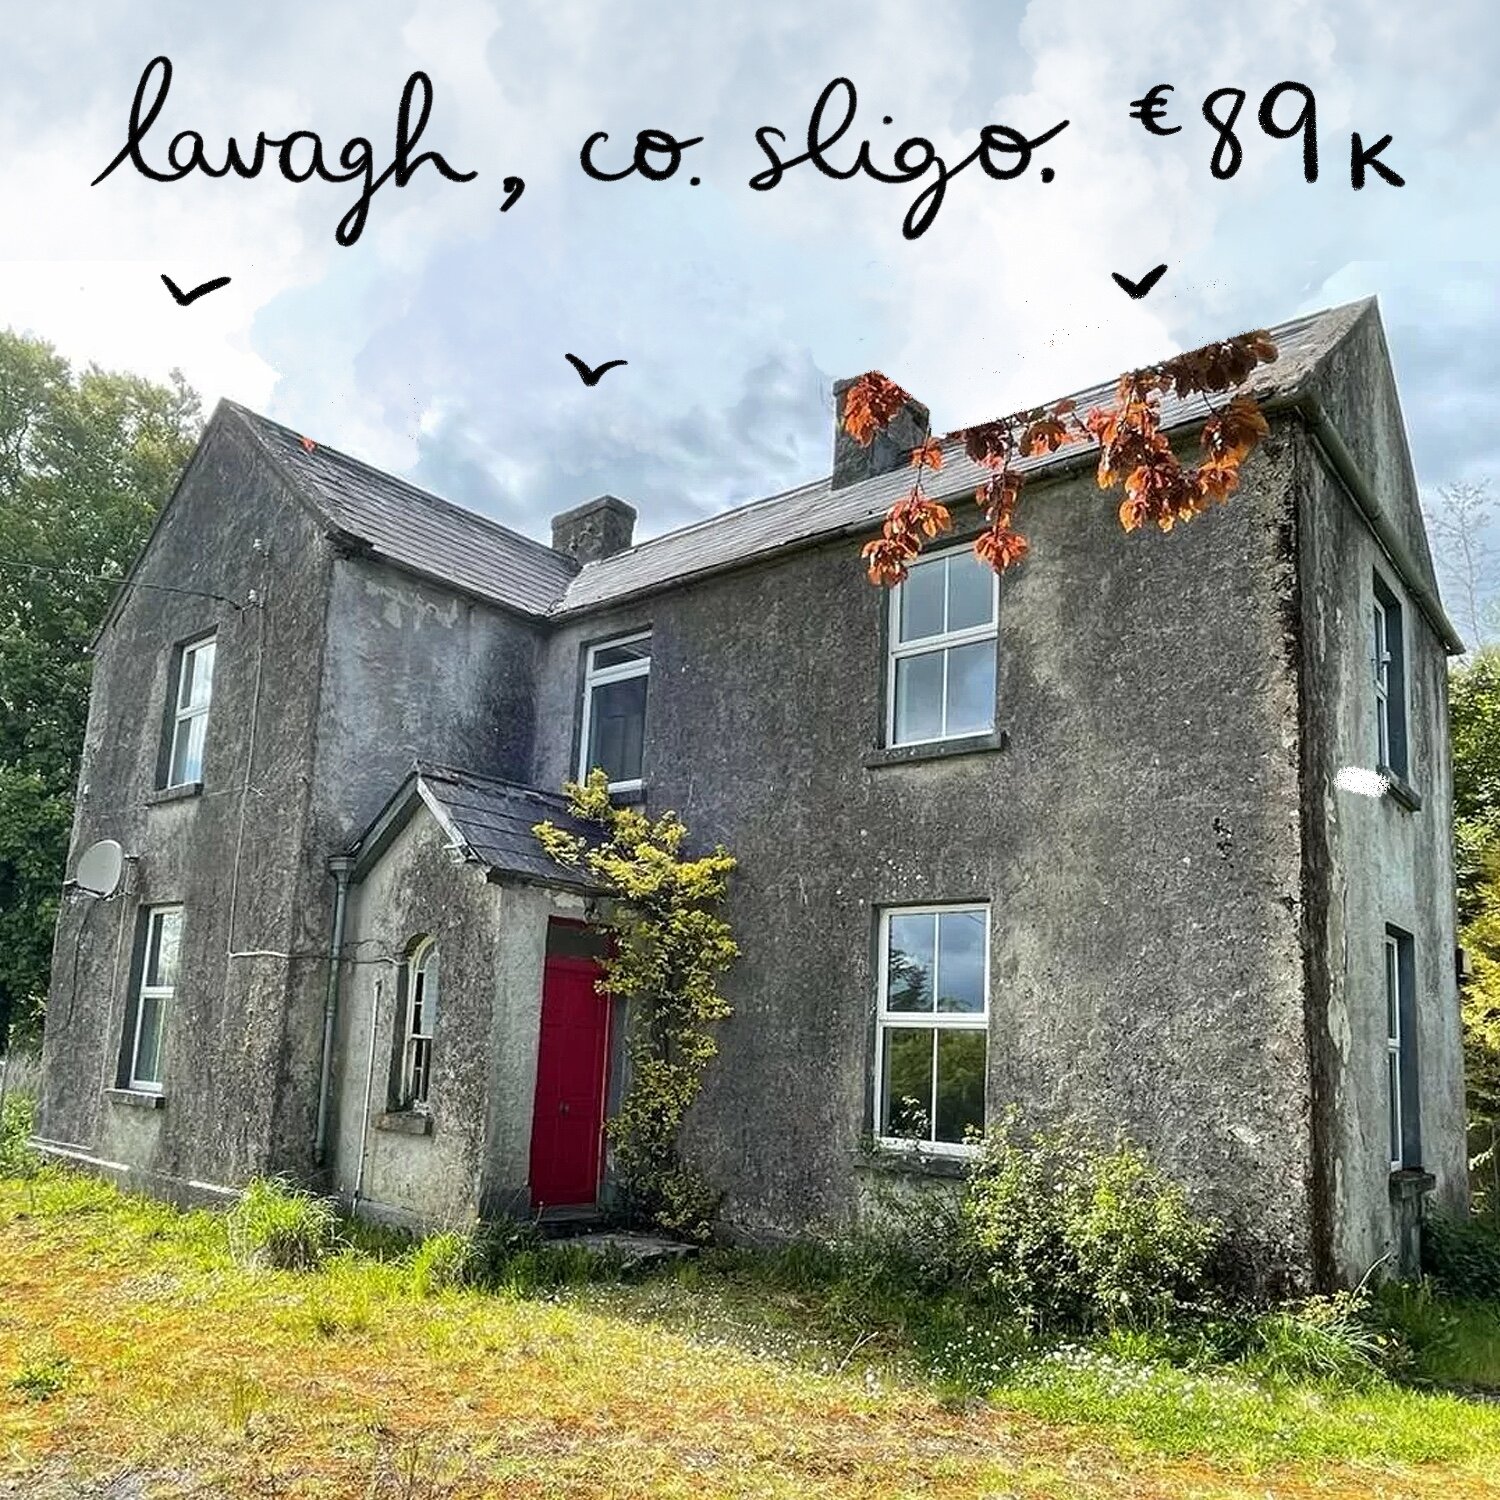 Claragh Scotch, Lavagh, Ballinacarrow, Co. Sligo. €89k